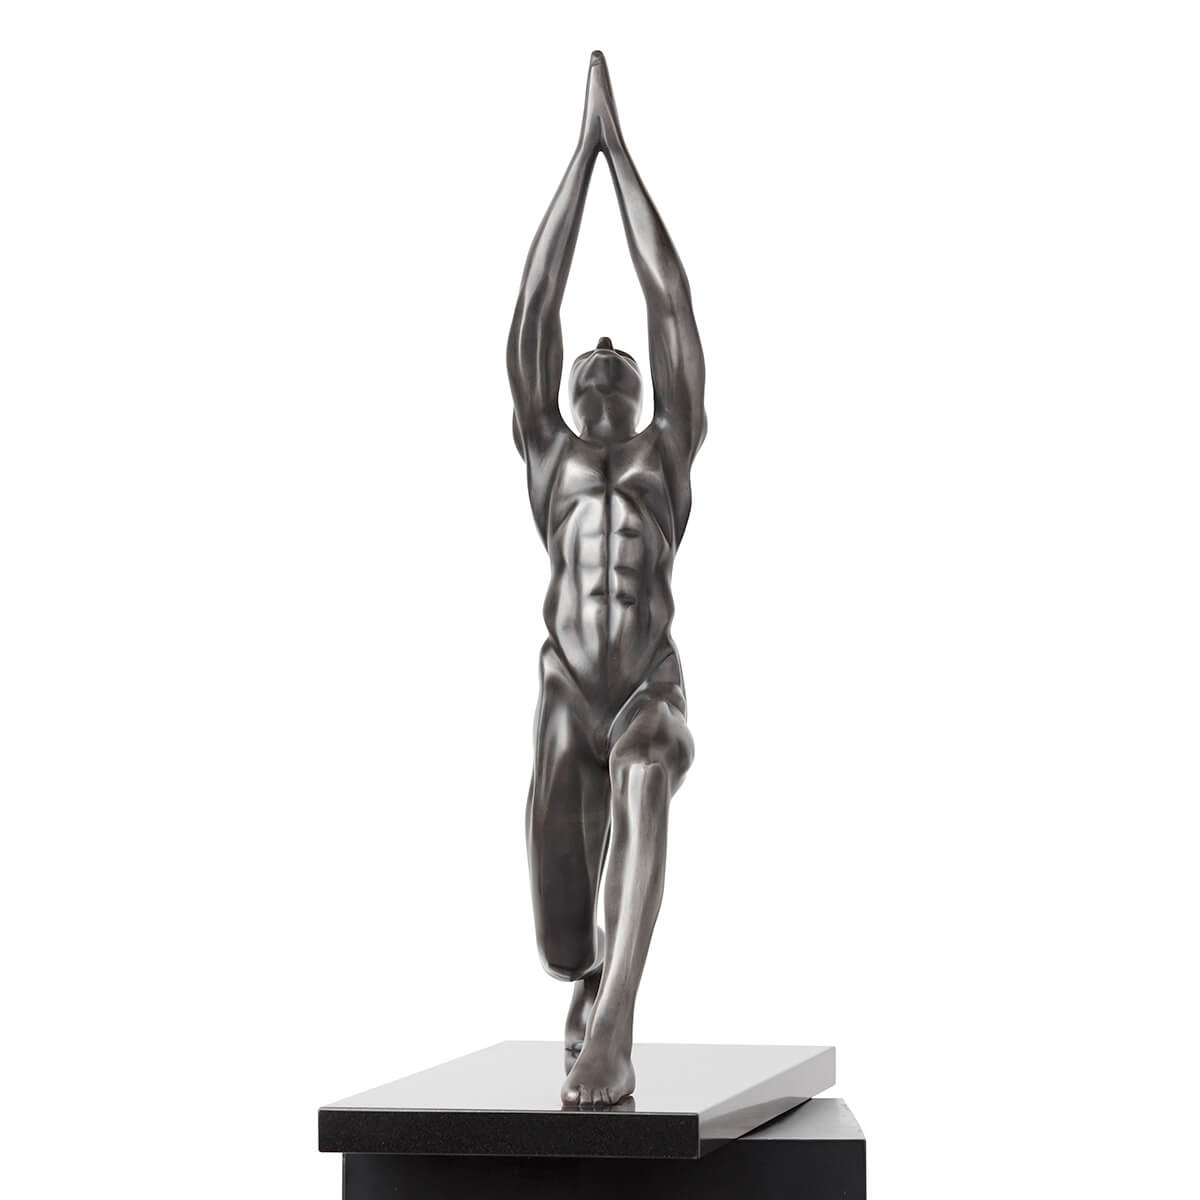 Robert-Helle-Sculpture-Gallery-Warrior-1-1200x1200